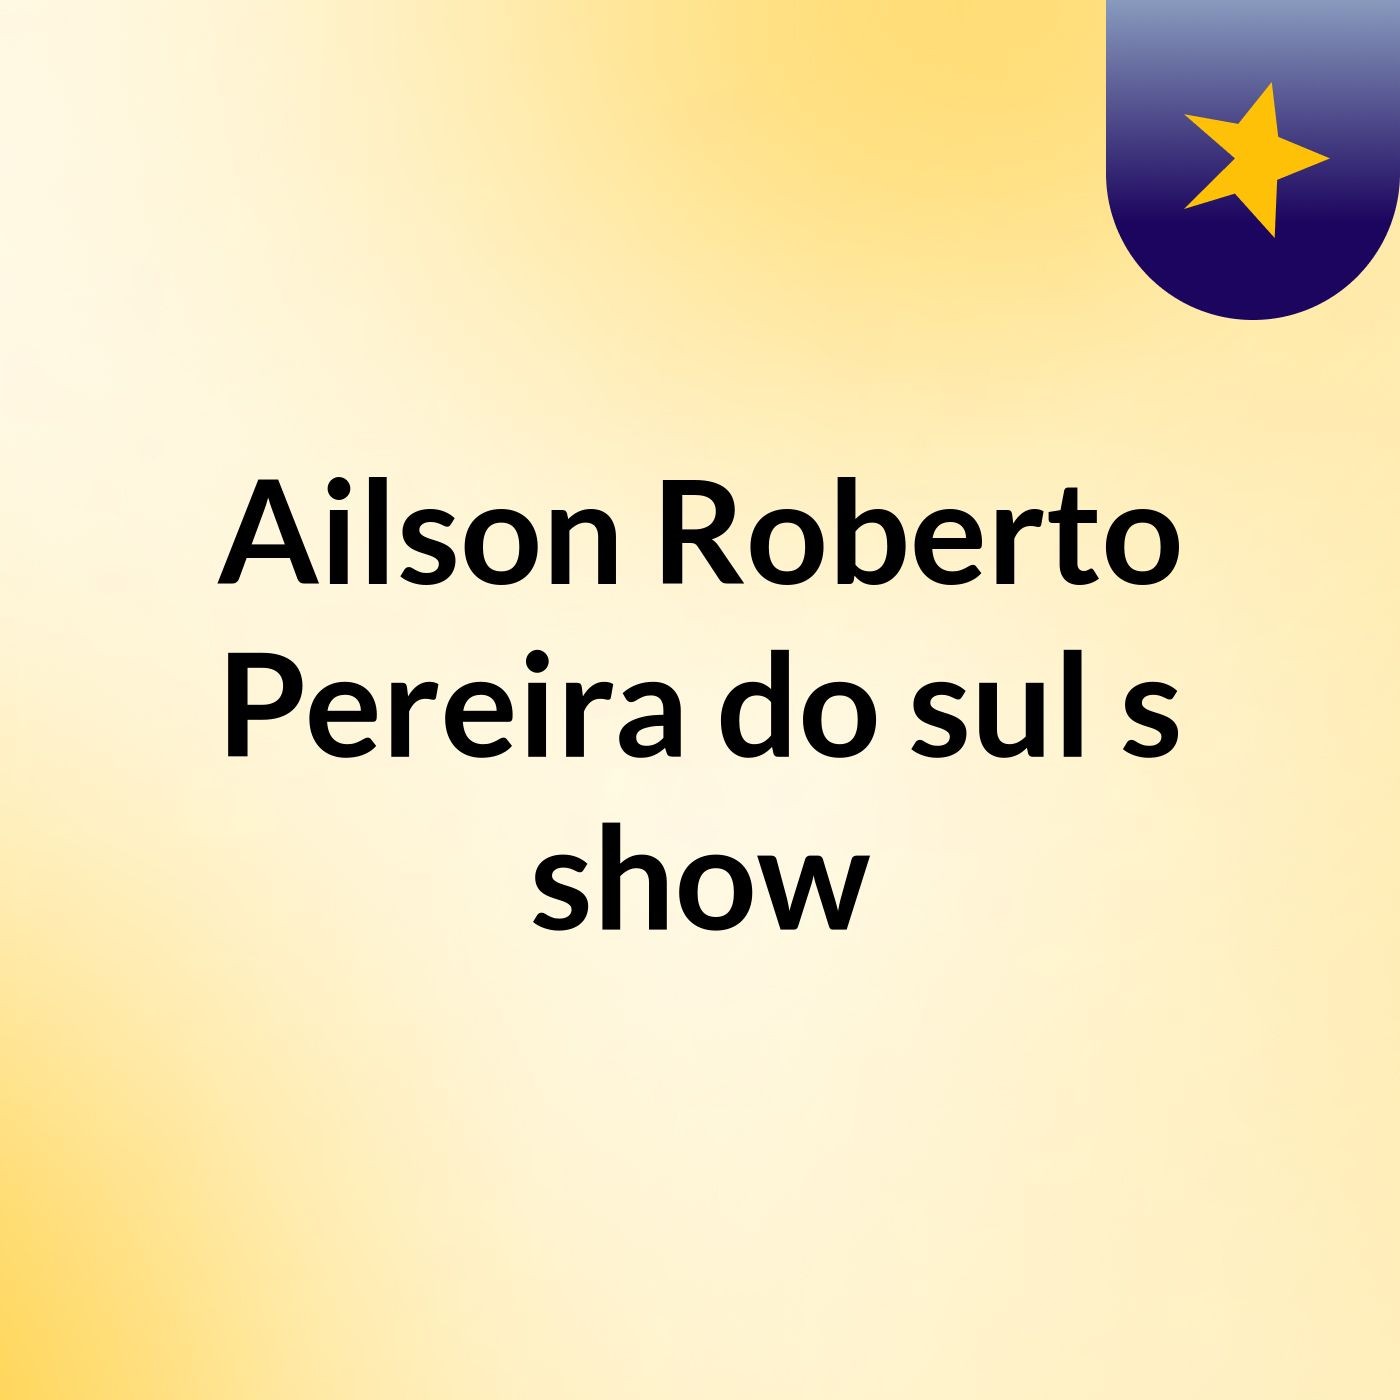 Ailson Roberto Pereira do sul's show